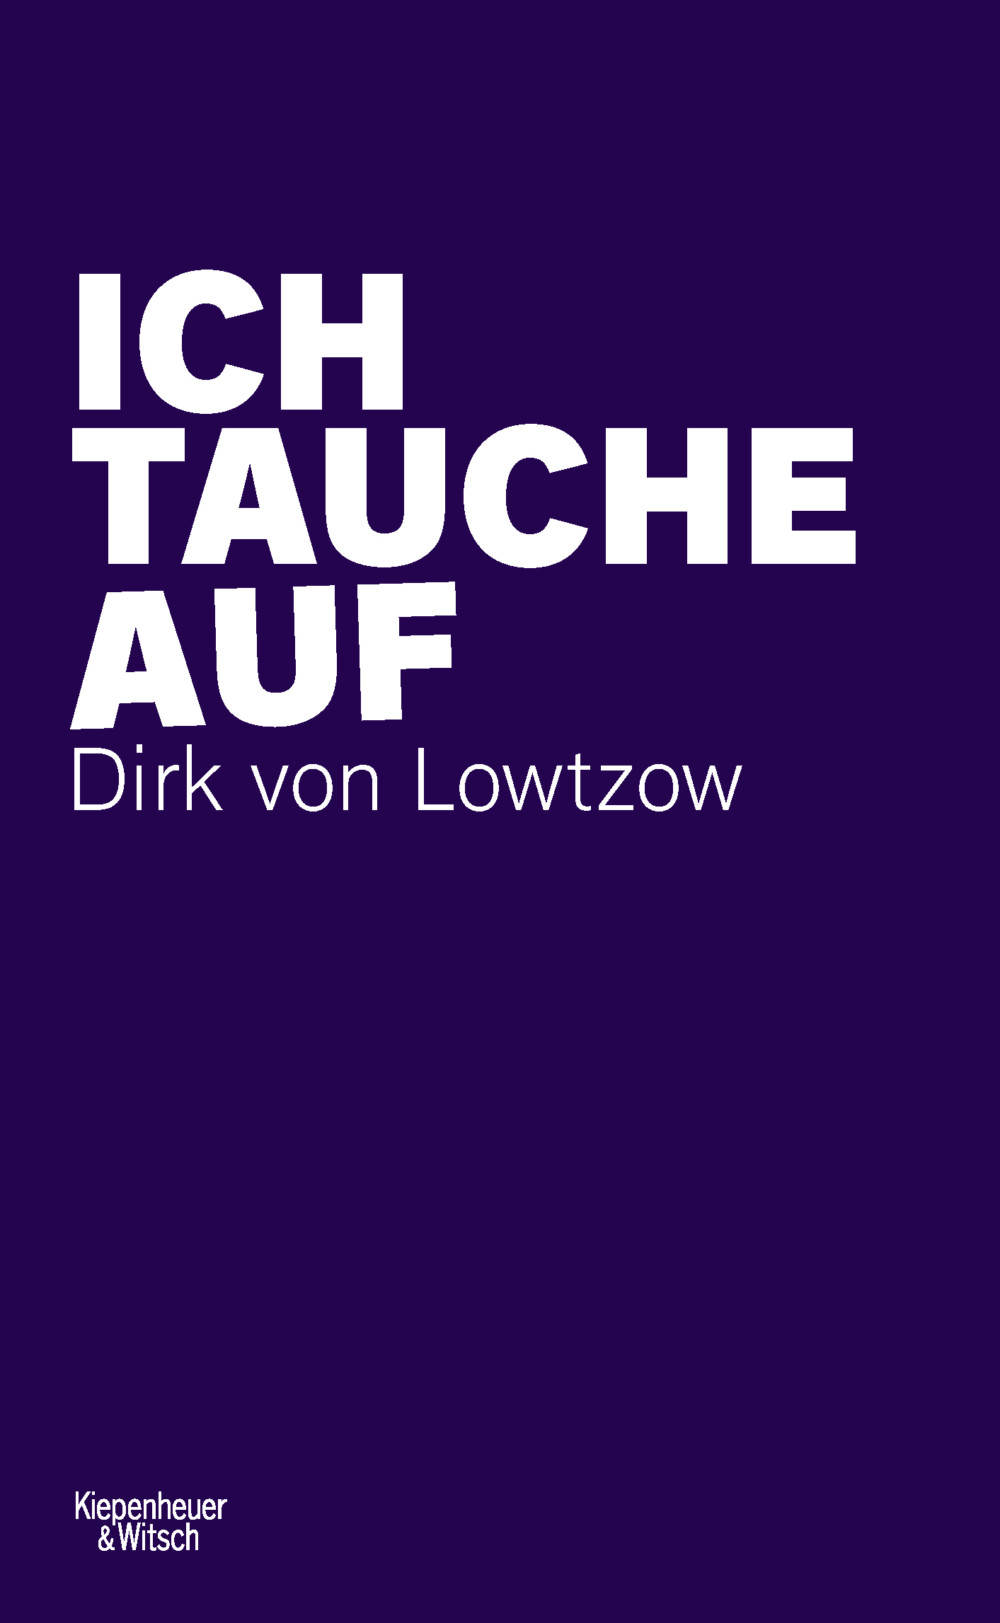 „Ich tauche auf “ von Dirk von Lowtzow st bei Kiepenheuer&Witsch erschienen (©Kiepenheuer&Witsch)